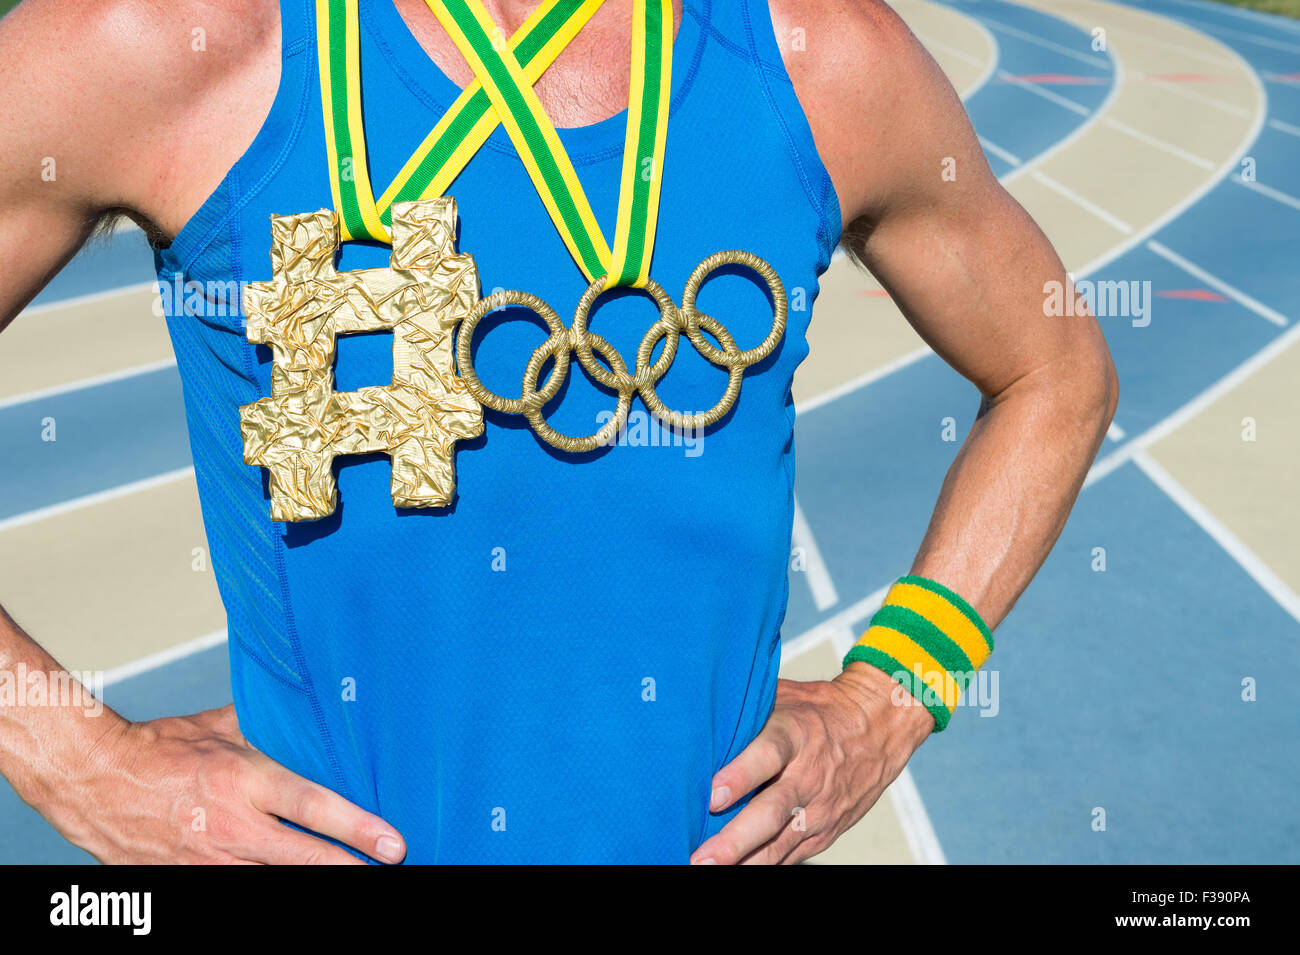 NEW YORK CITY, USA - 20. August 2015: Olympische Ringe gold Medaille hängt neben Hashtag aus Brasilien Farbbänder an Sportler. Stockfoto